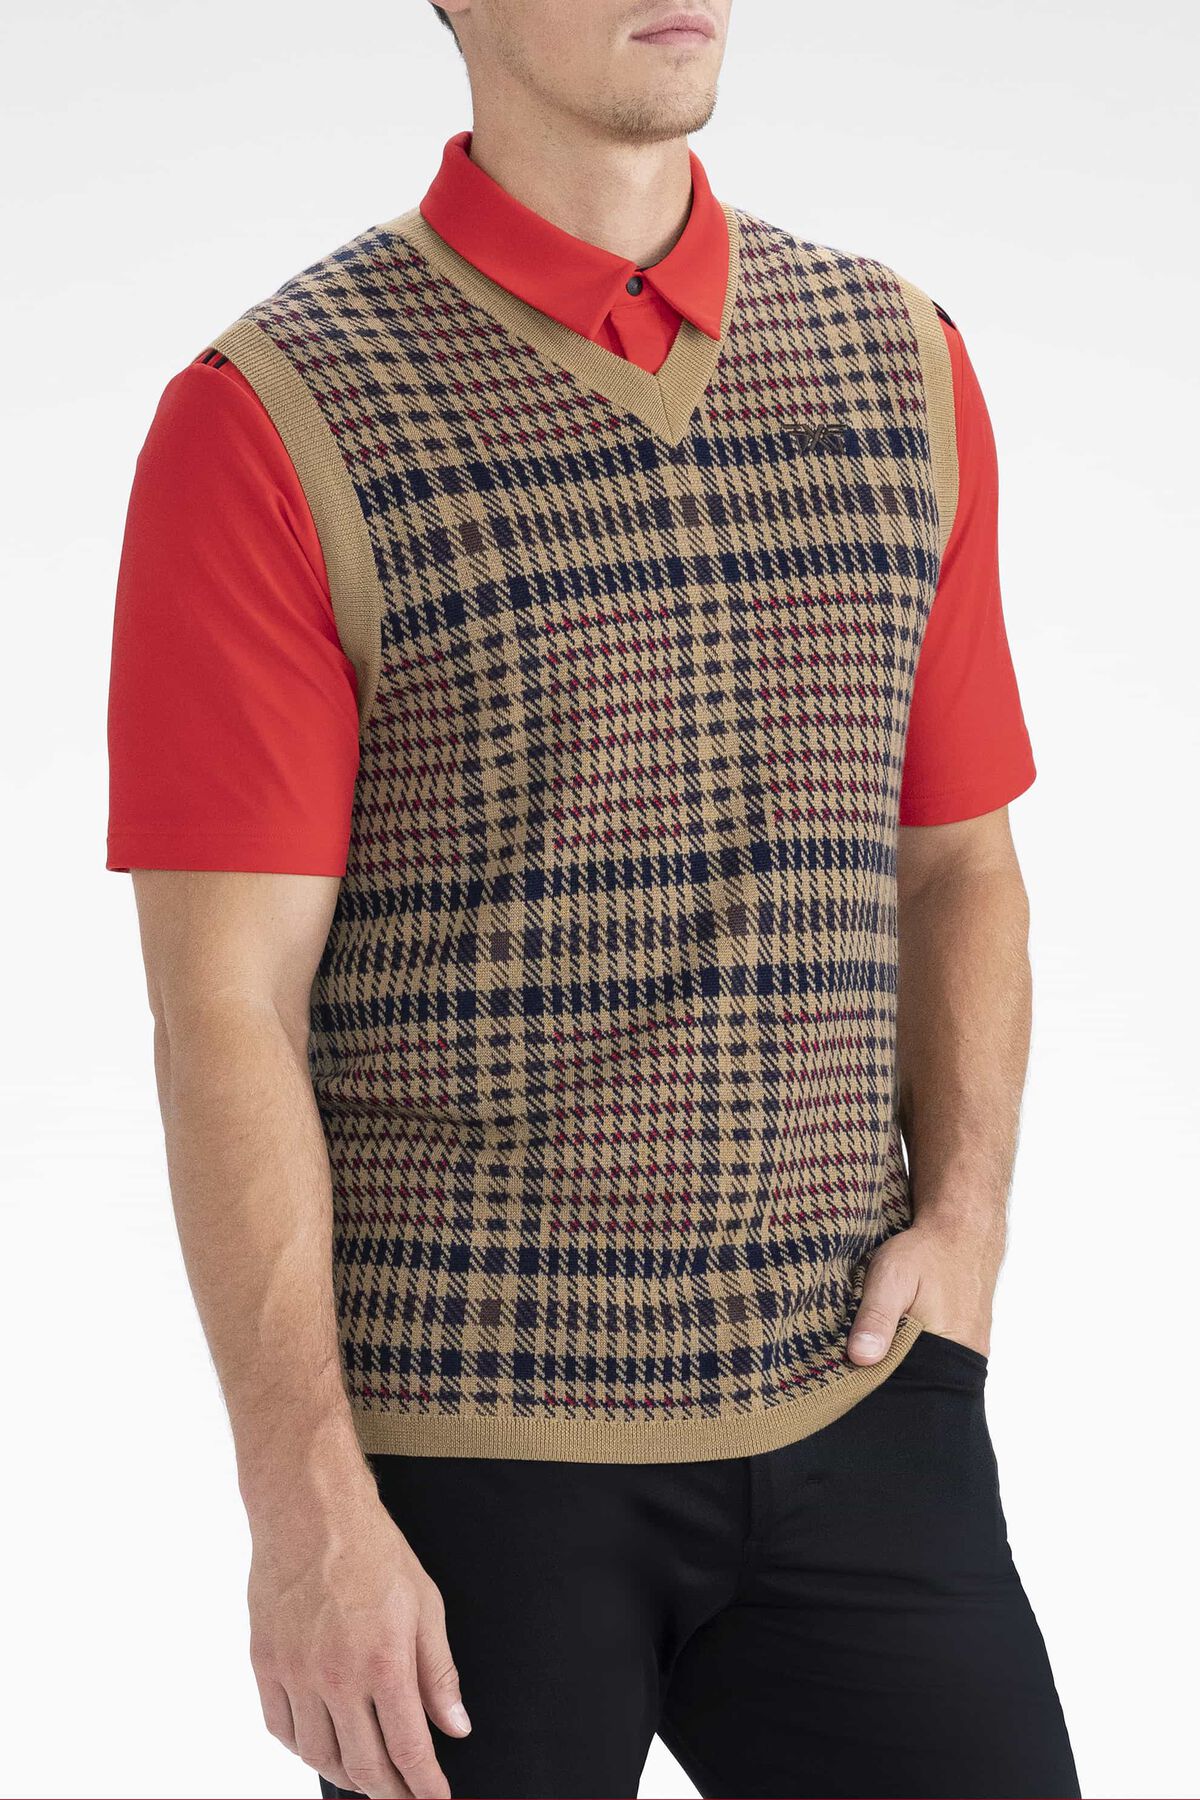 Karakteriseren vlinder Narabar Plaid Sweater Vest | Shop the Highest Quality Golf Apparel, Gear,  Accessories and Golf Clubs at PXG